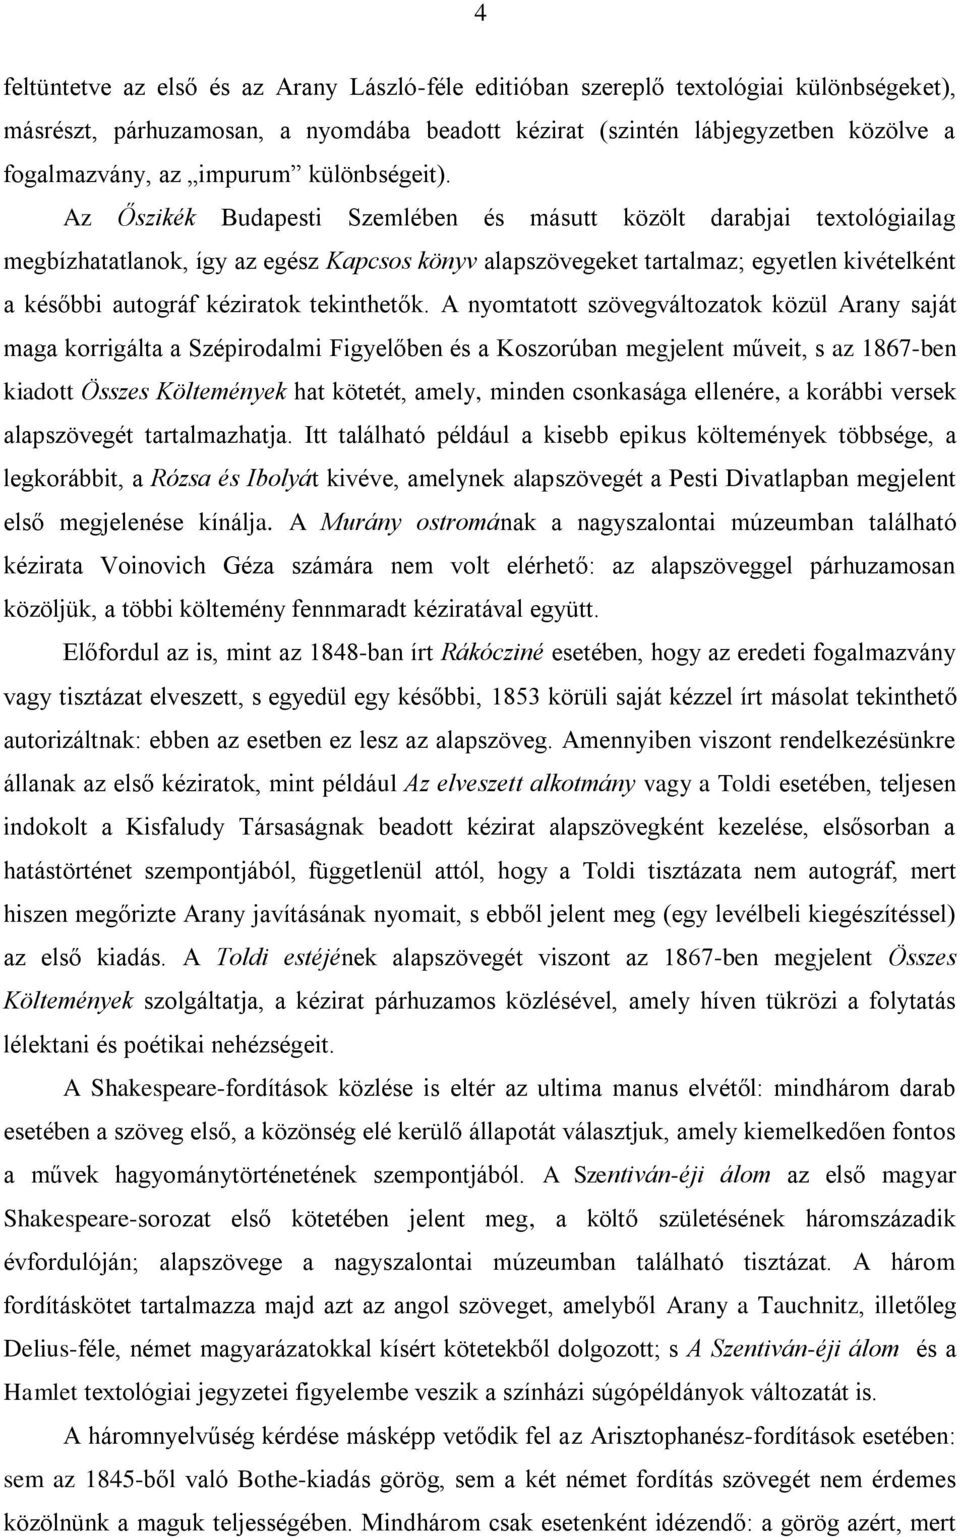 Az Őszikék Budapesti Szemlében és másutt közölt darabjai textológiailag megbízhatatlanok, így az egész Kapcsos könyv alapszövegeket tartalmaz; egyetlen kivételként a későbbi autográf kéziratok